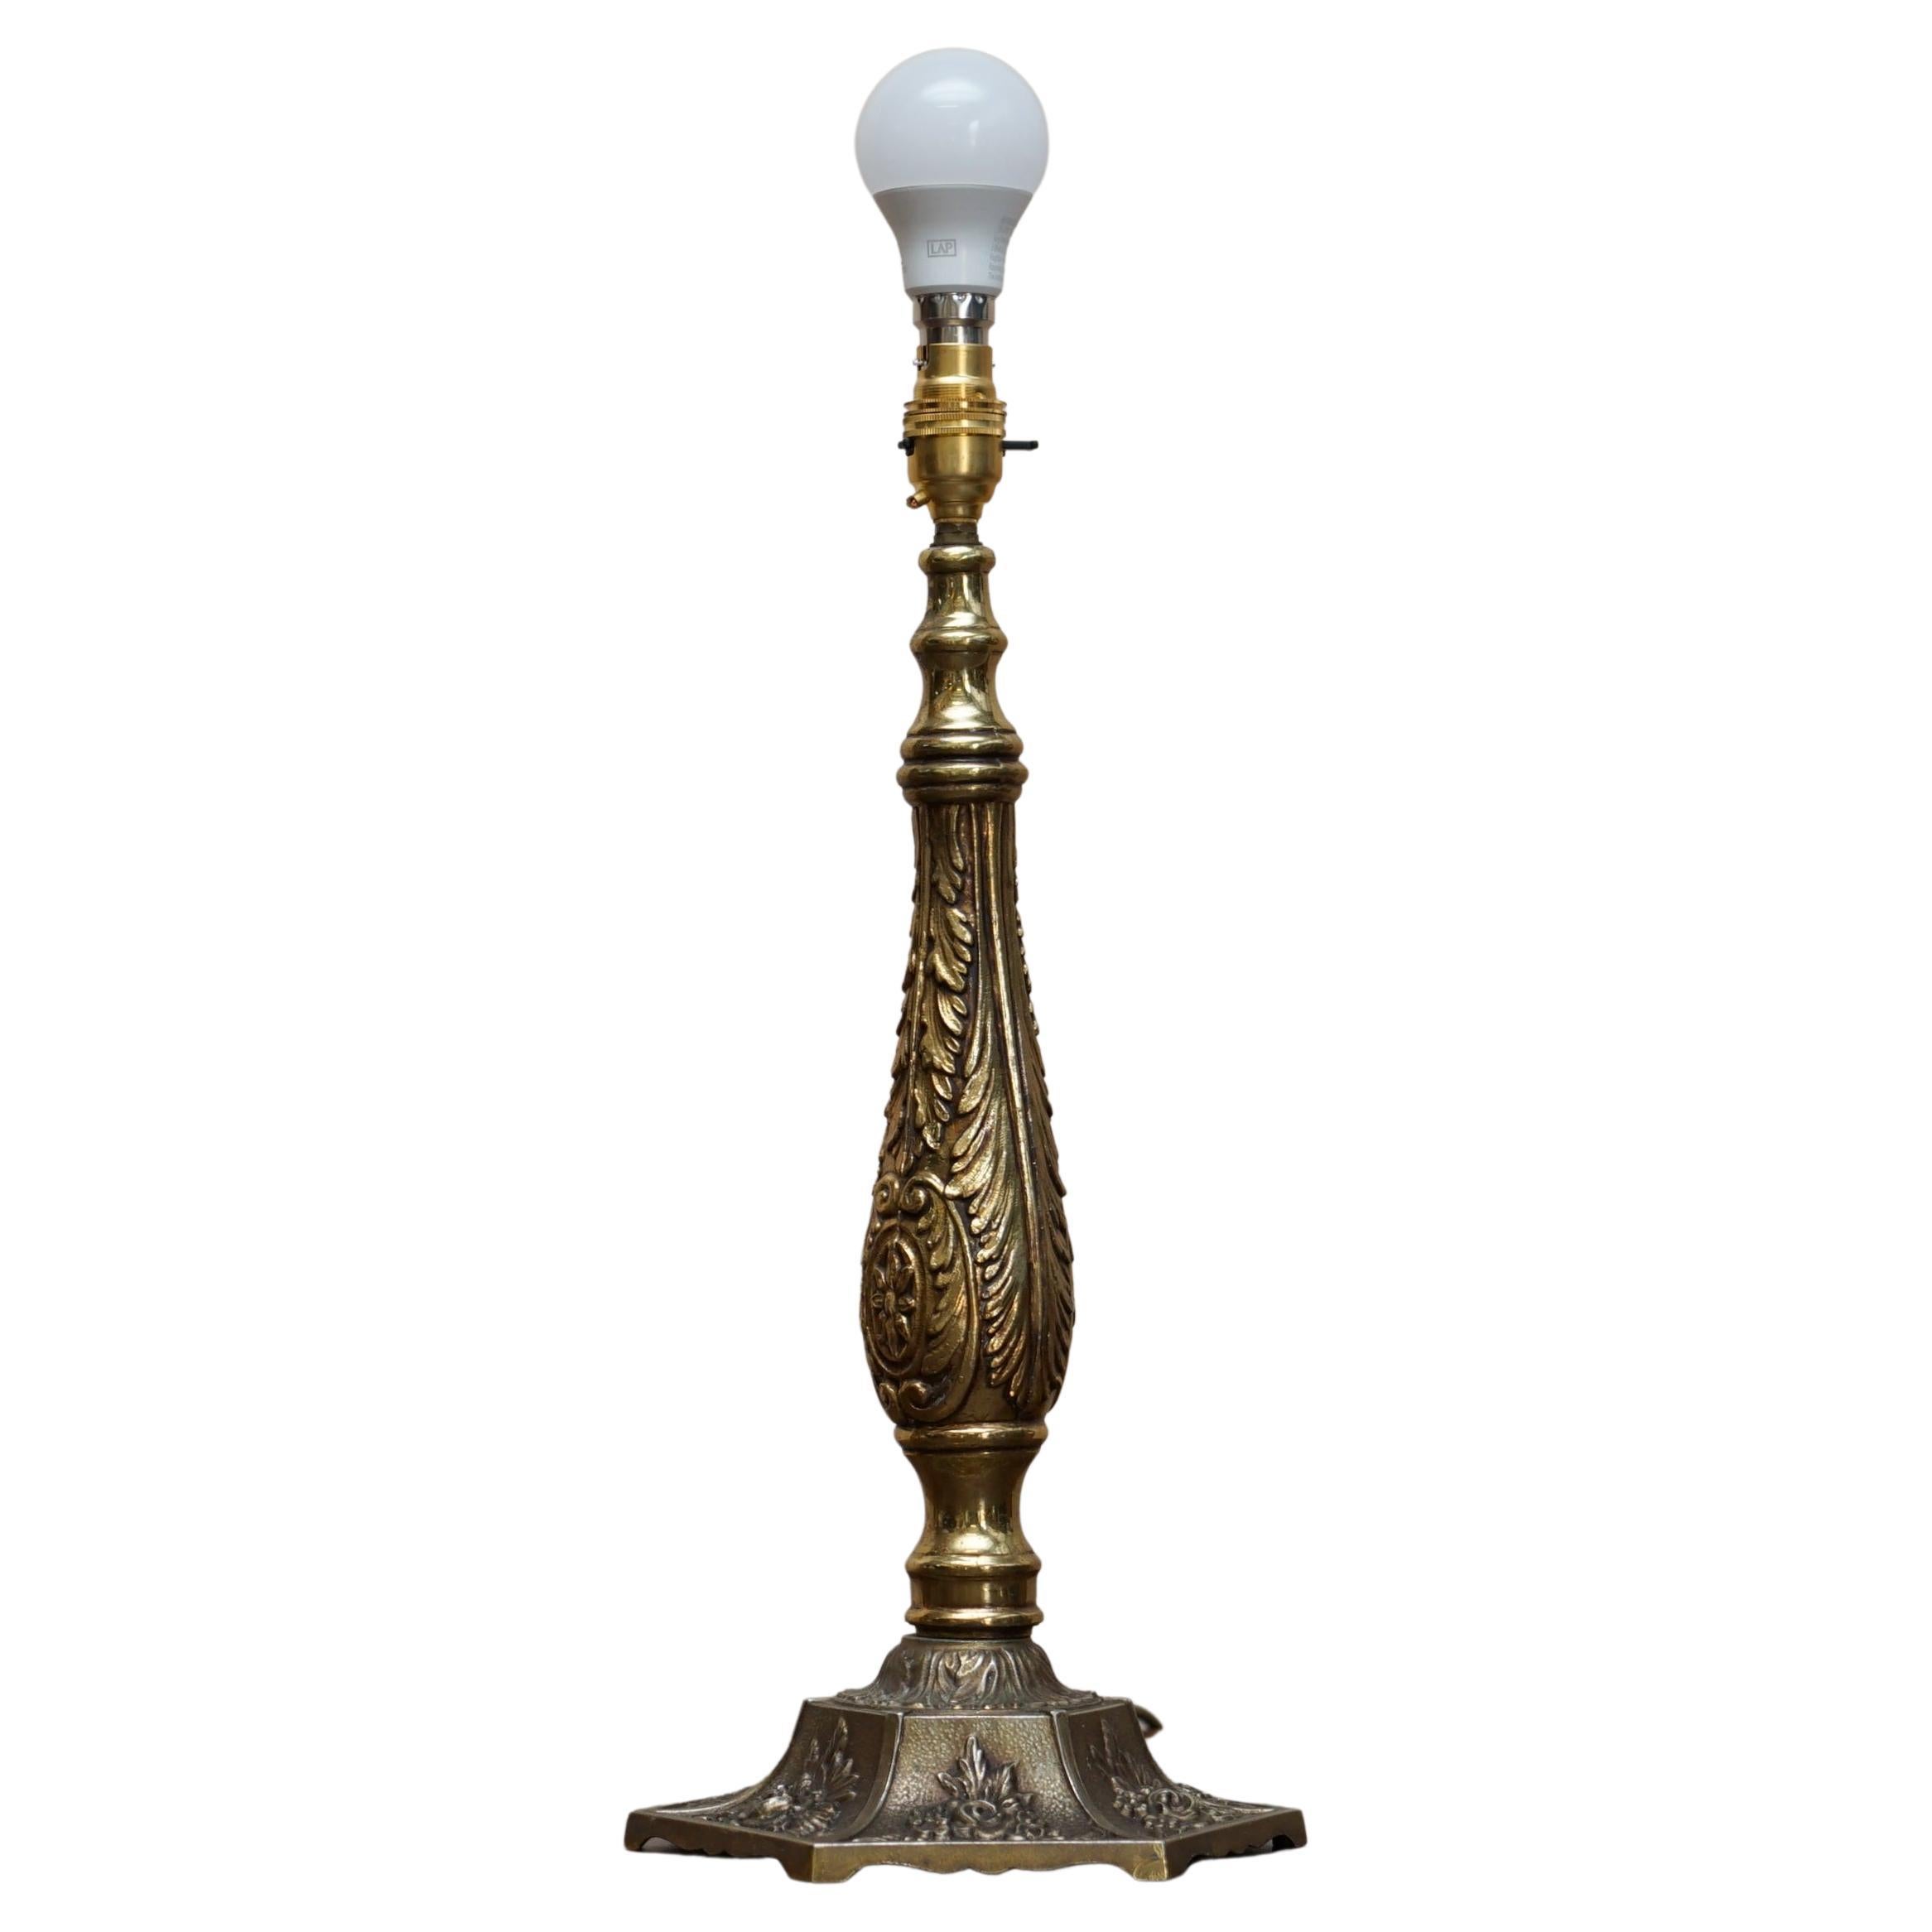 Atemberaubende viktorianische Repousse-Messing-Tischlampe, sehr dekorativ und wunderschön gegossen